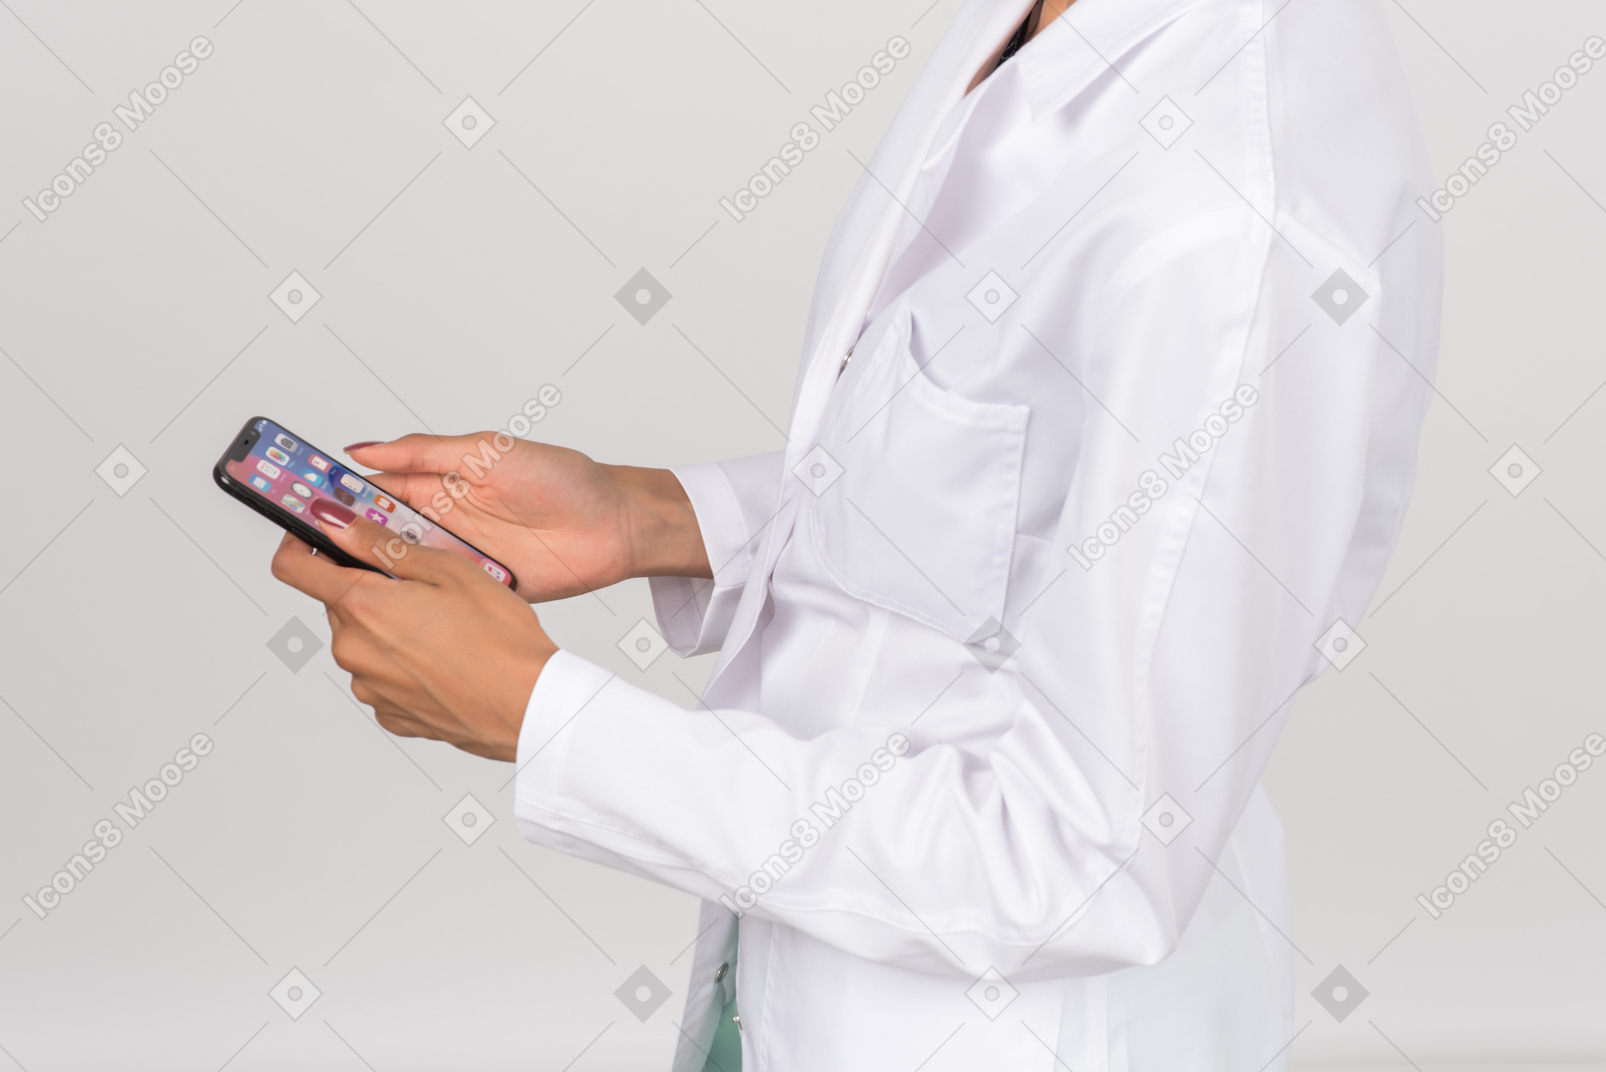 Ärztin, die ein smartphone hält